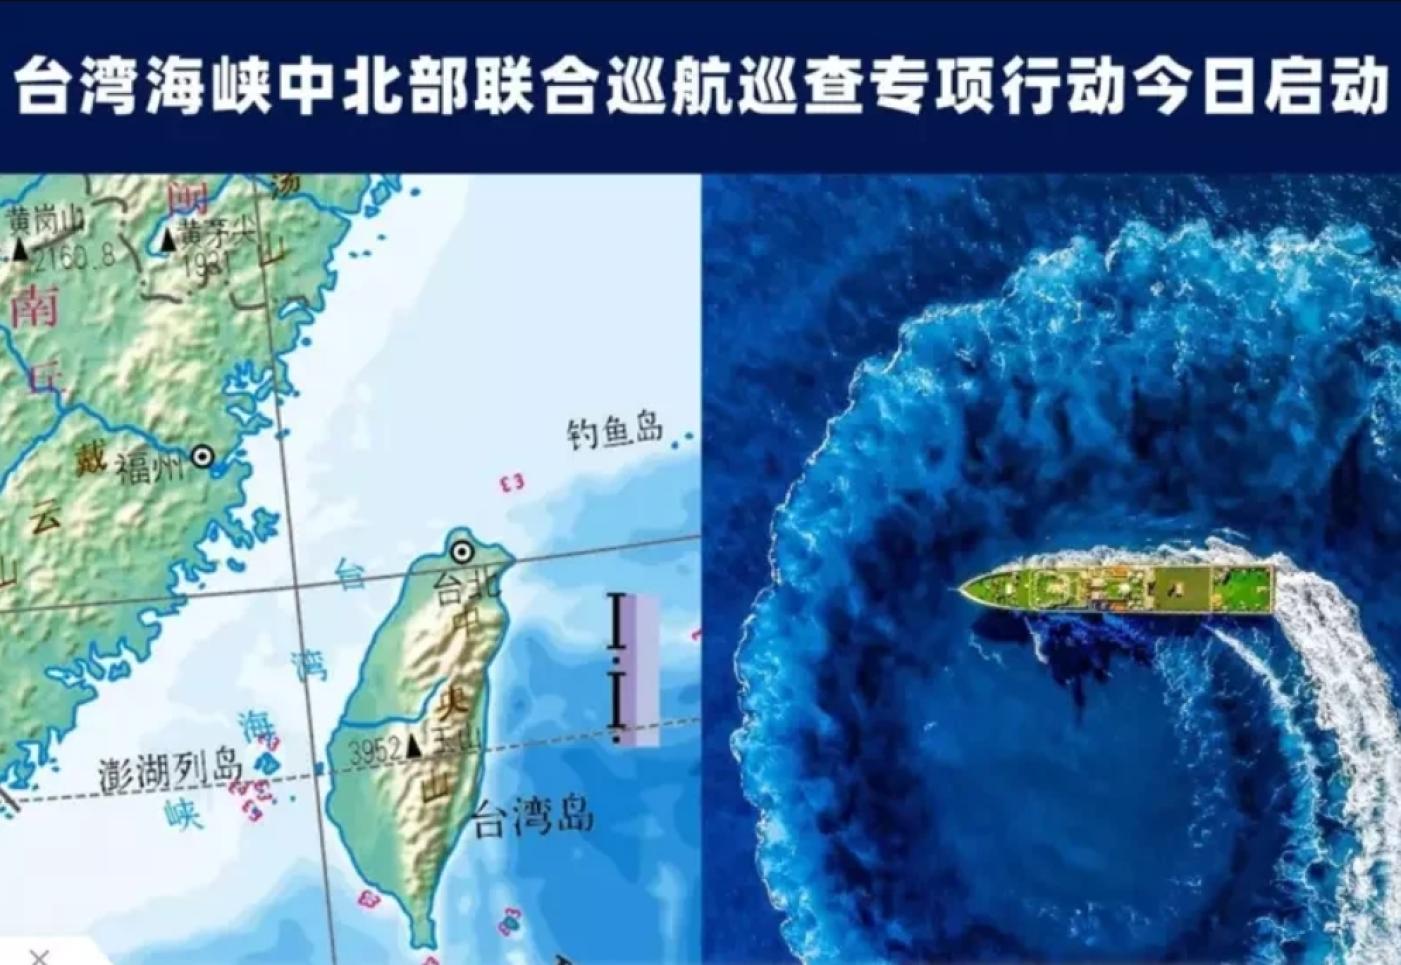 中國福建海事微信公眾號宣布，台灣海峽中北部聯合巡航巡查專項行動今日啓動。翻攝福建海事